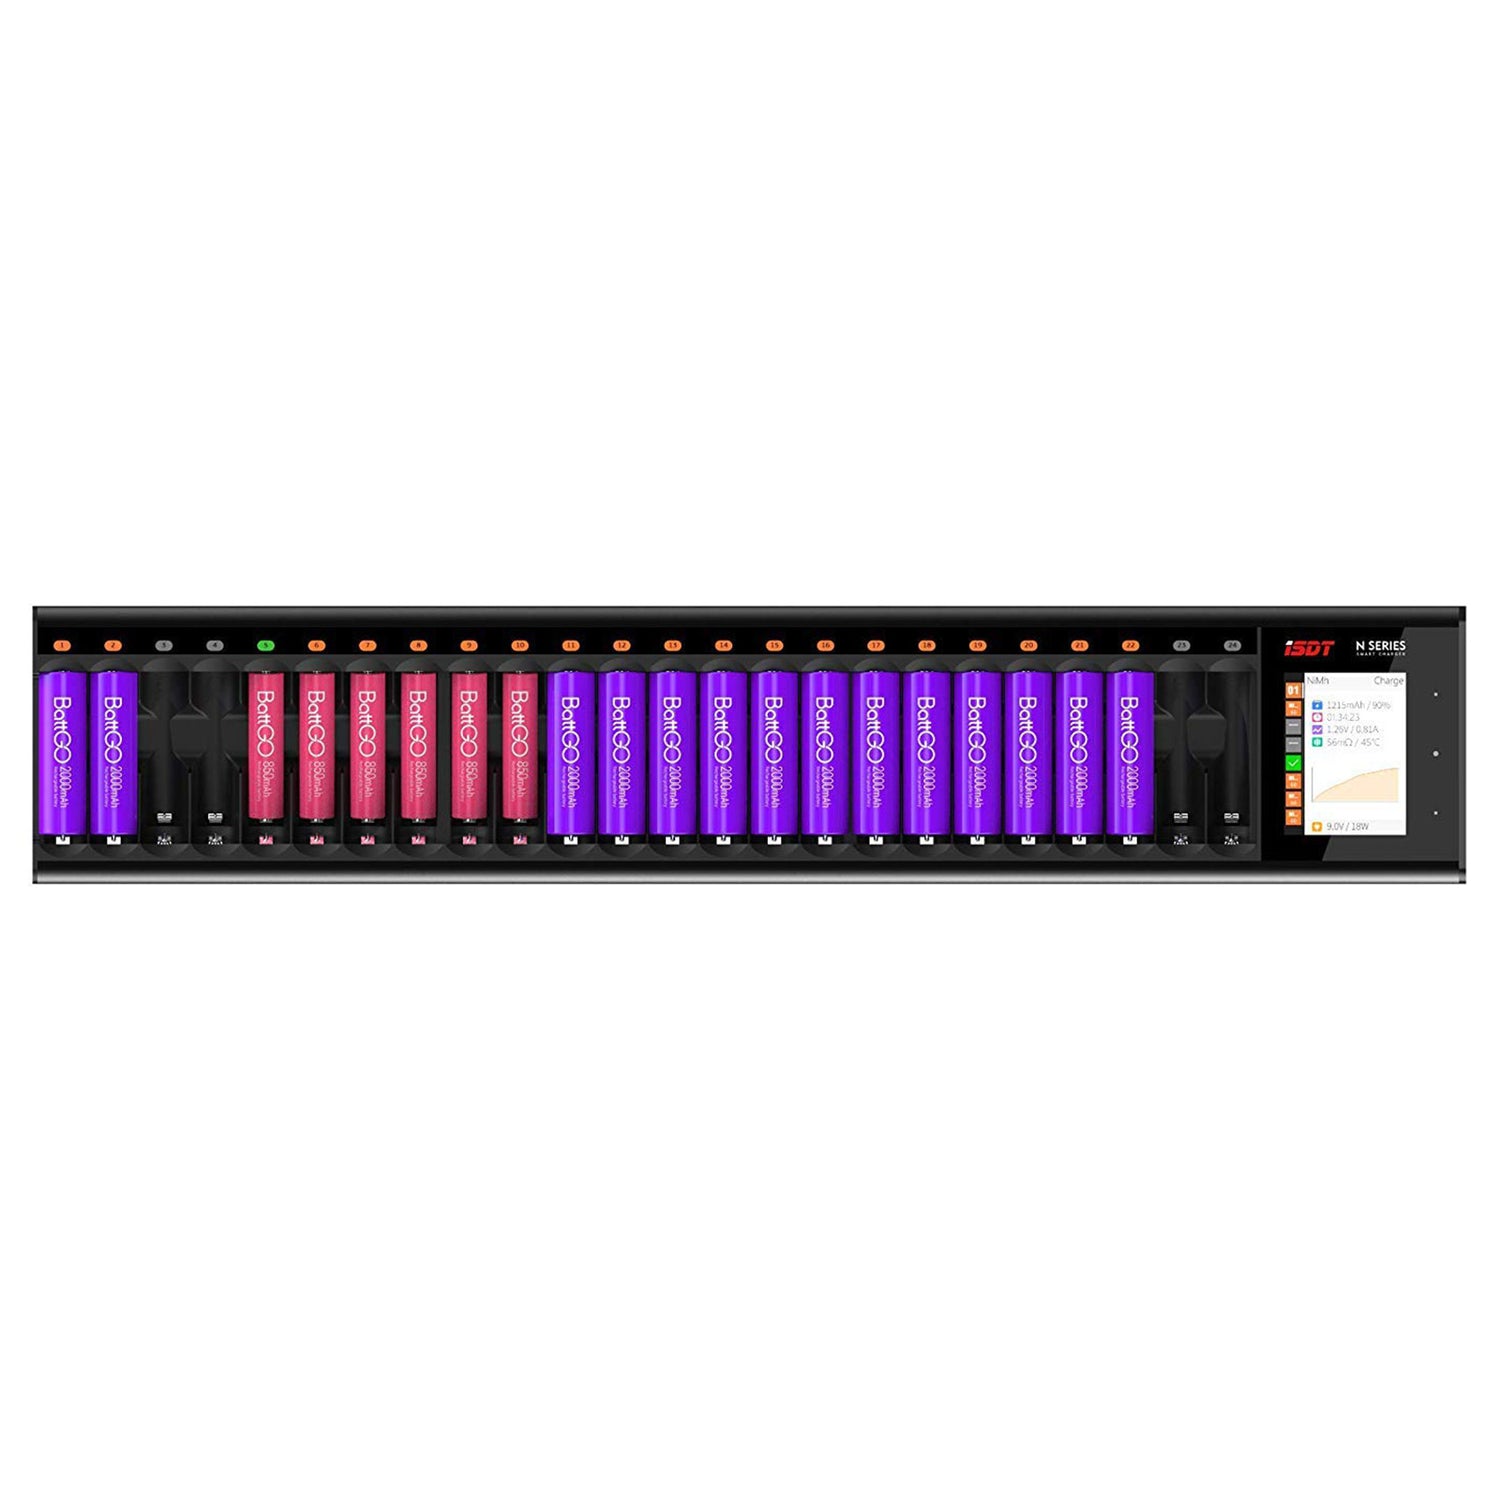 N24 LCD Chargeur de batterie à 24 slots pour batteries rechargeables, chargeur rapide 48W pour batteries AA / AAA